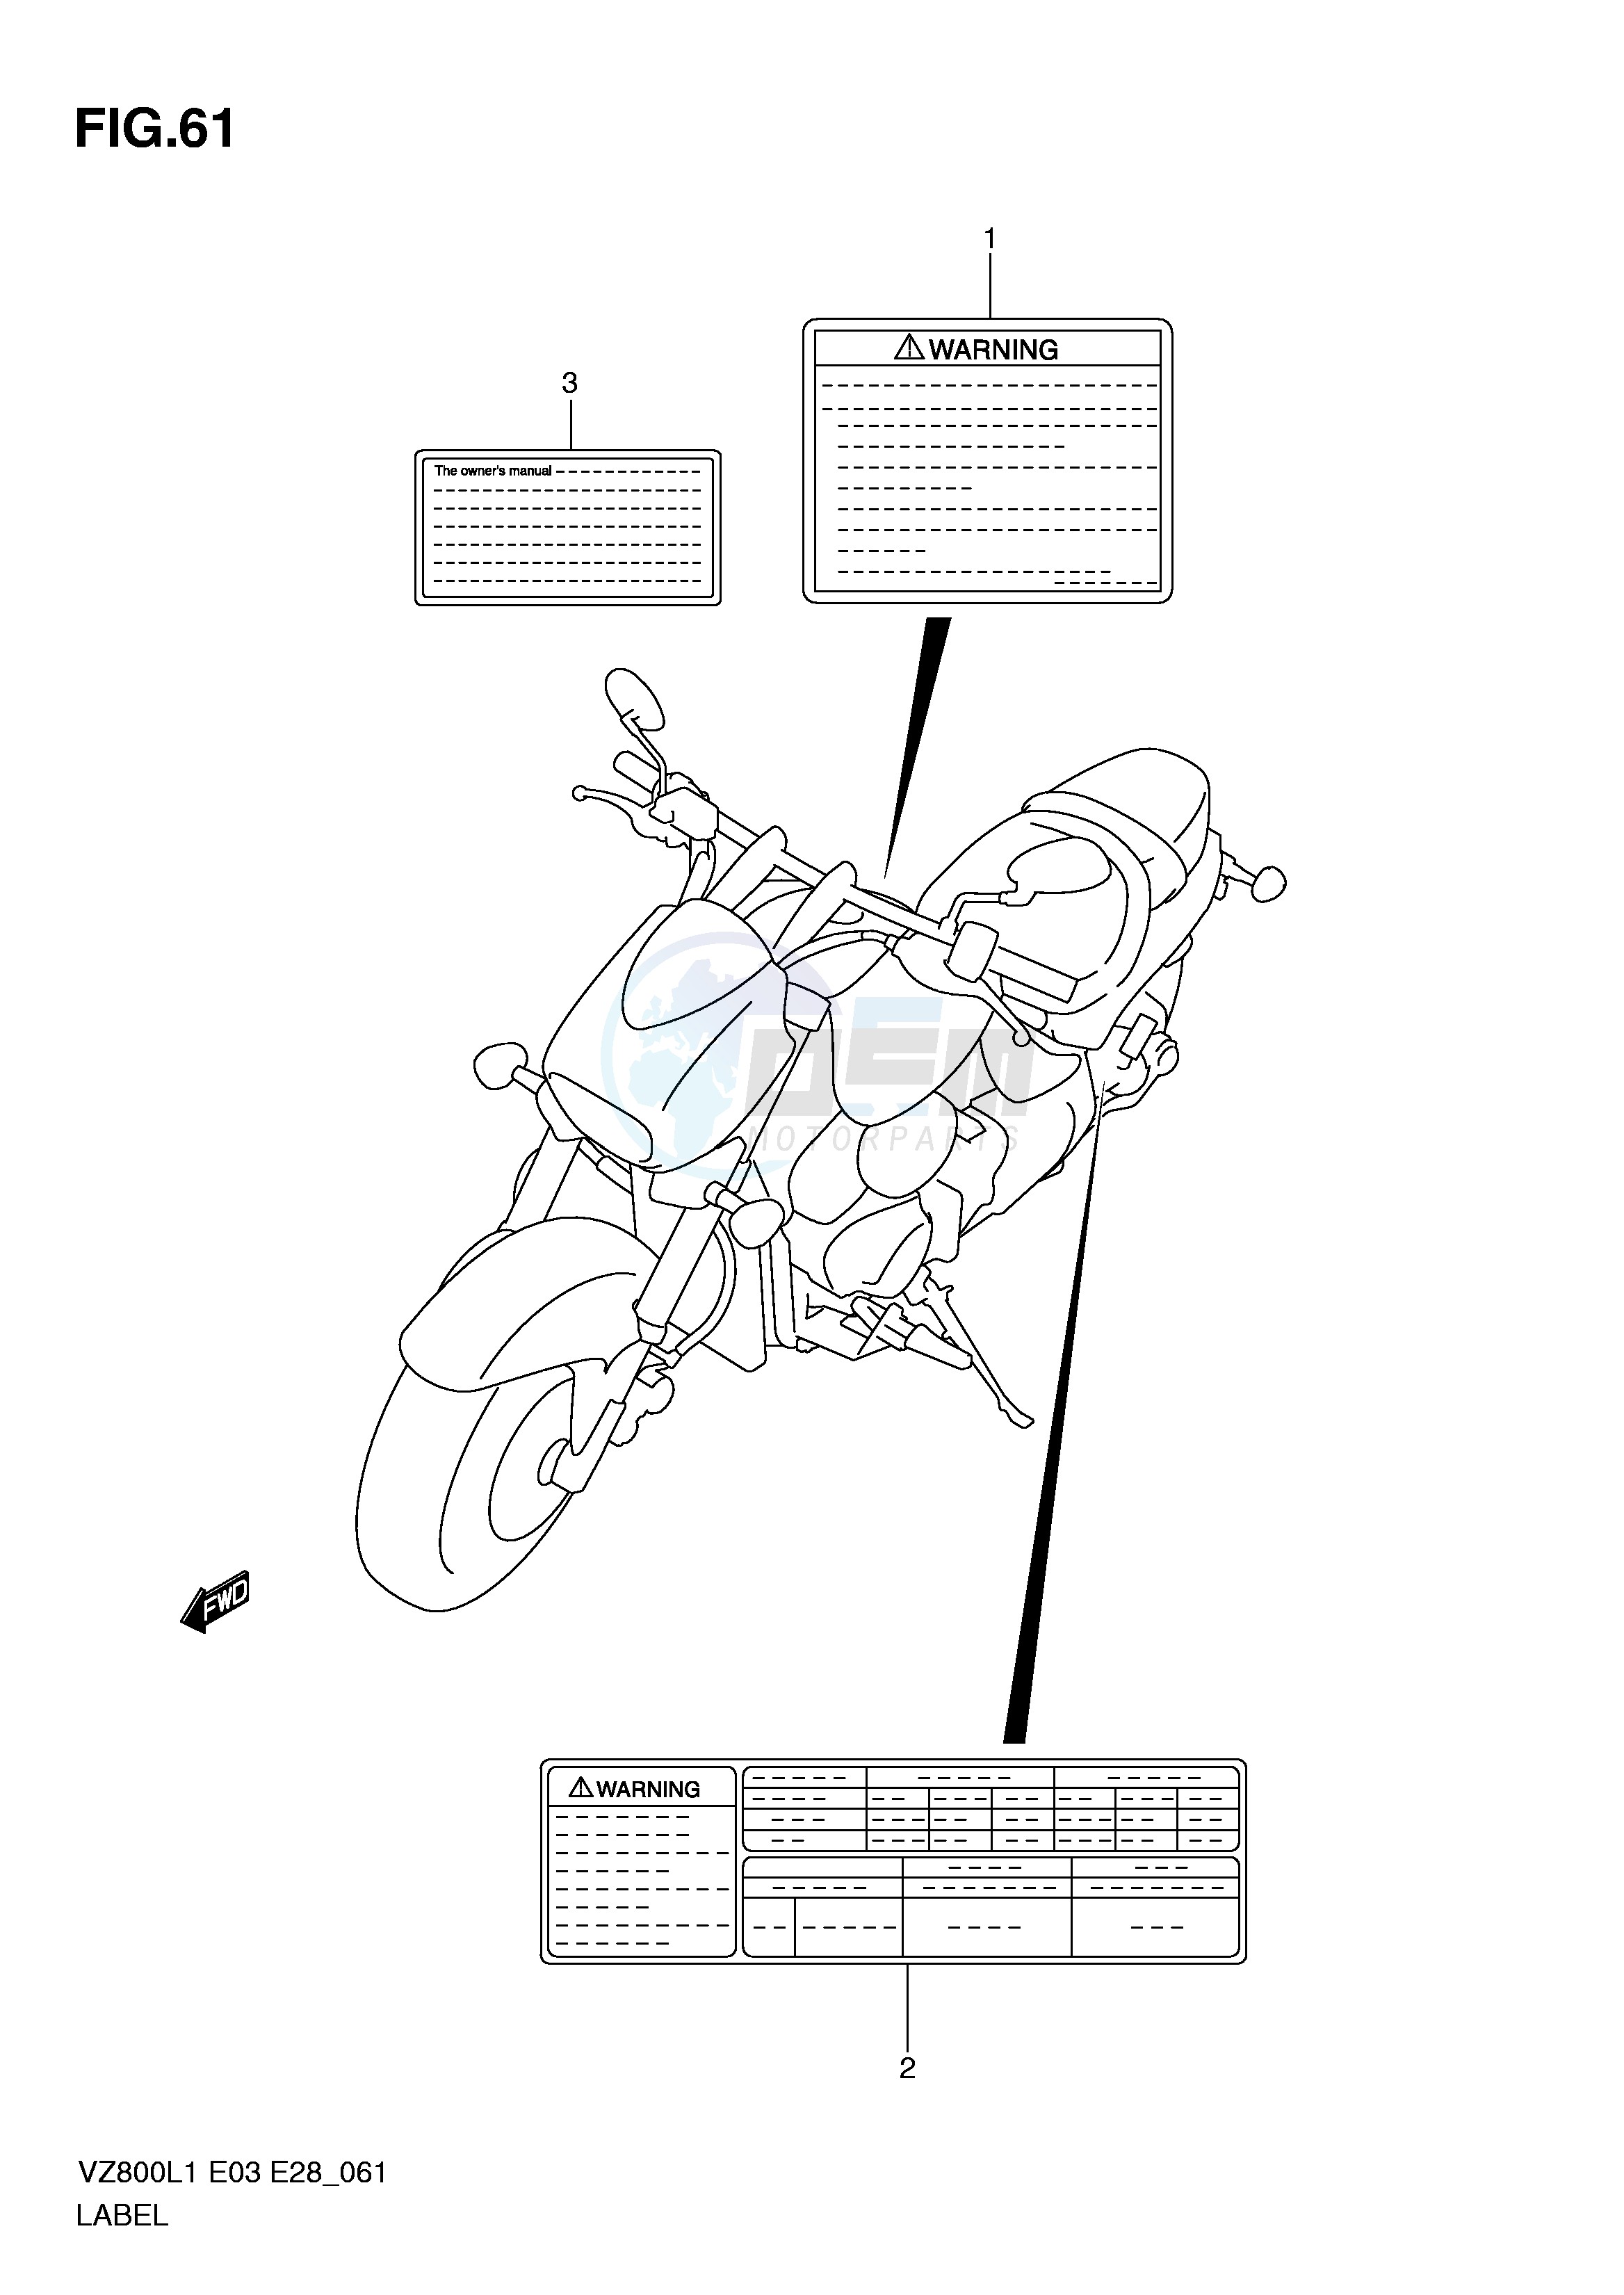 LABEL (VZ800L1 E3) blueprint